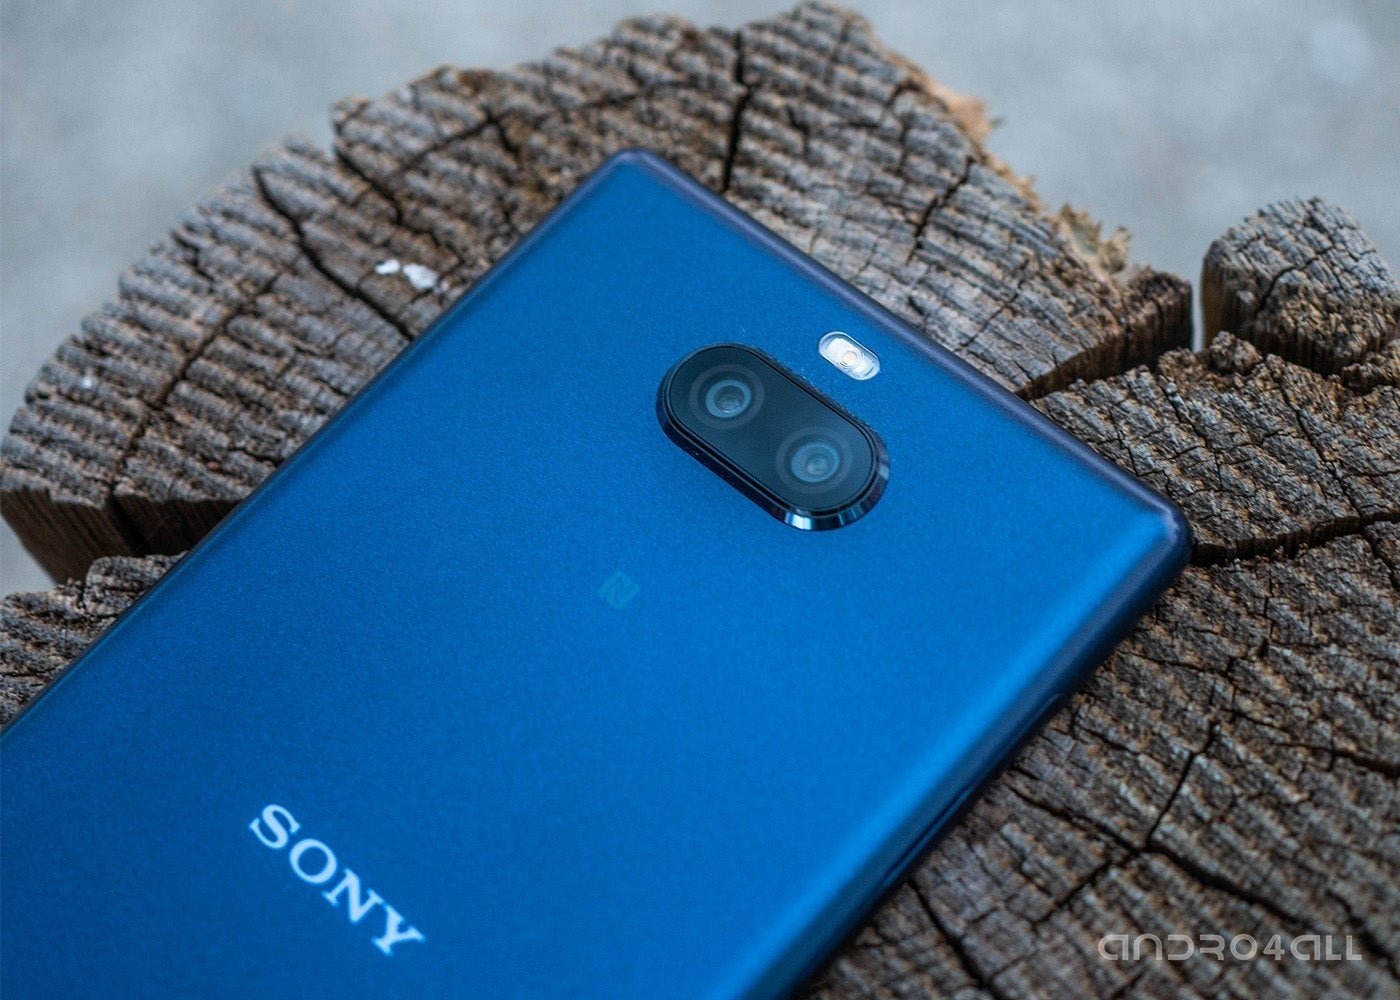 Sony seguirá apostando por la fotografía como rasgo distintivo de su división móvil: quiere la calidad de una DSLR